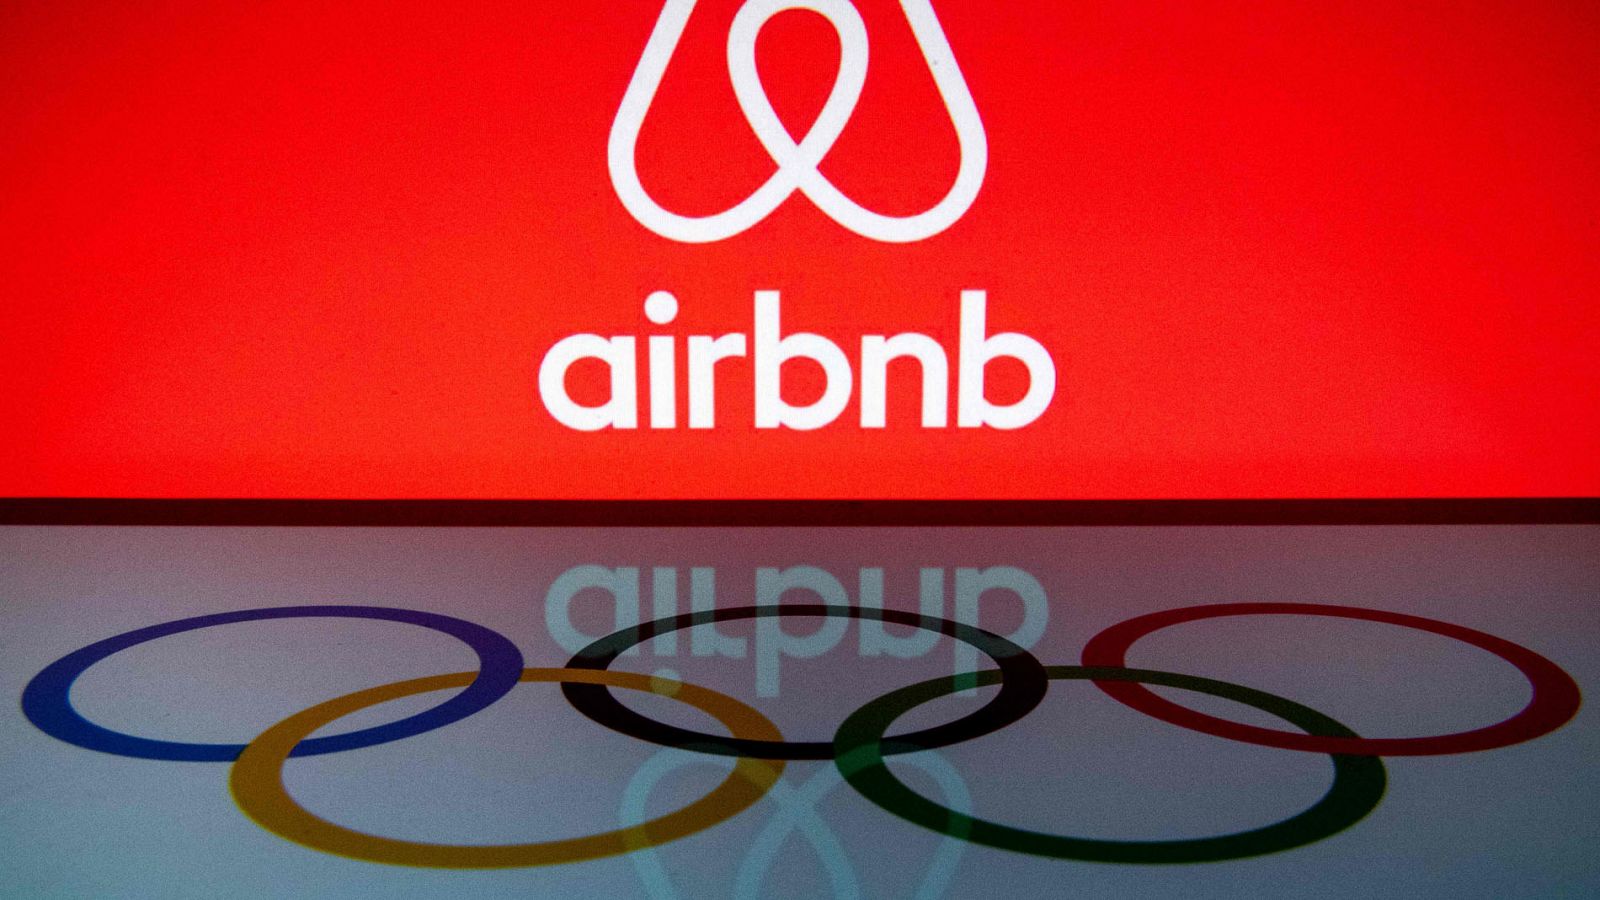 Juegos Olímpicos Airbnb | El COI acuerda alojar a los deportistas olímpicos en apartamentos de Airbnb - RTVE.es